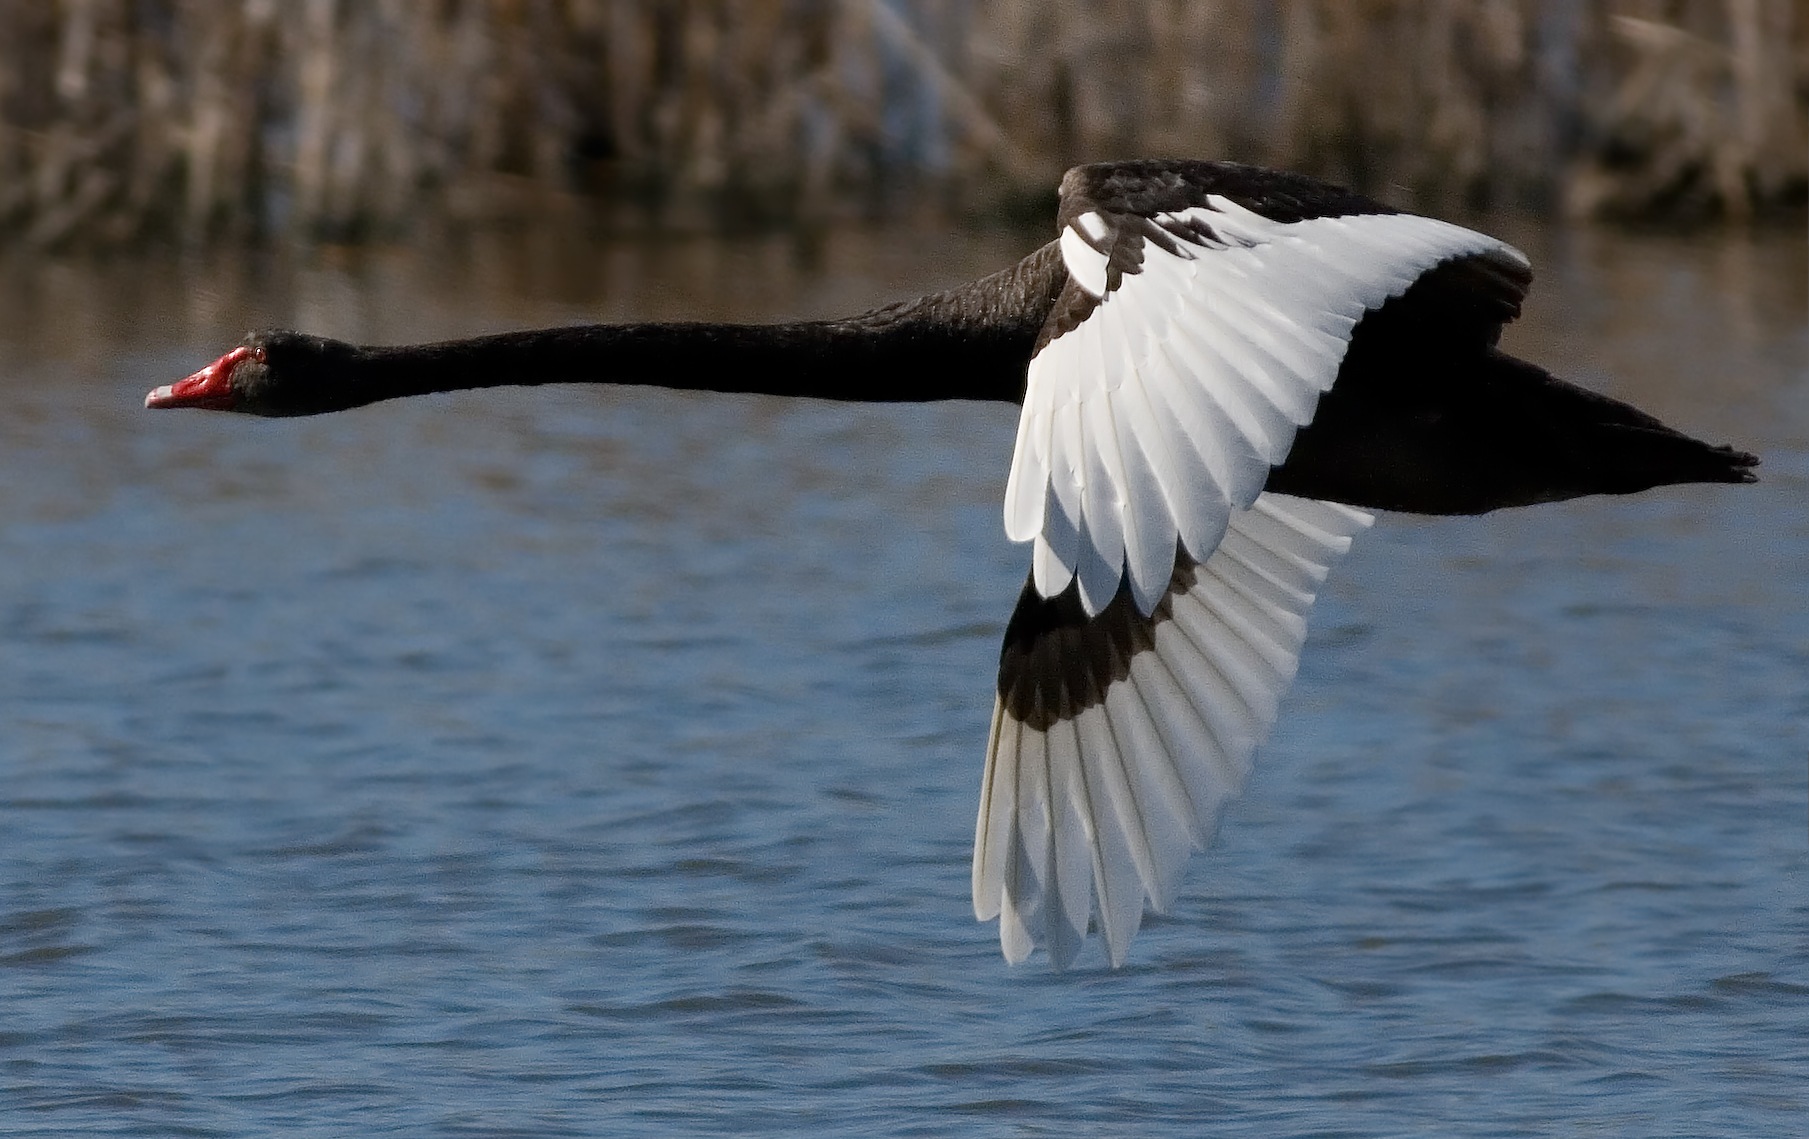 Black_Swan_in_Flight_Crop.jpg